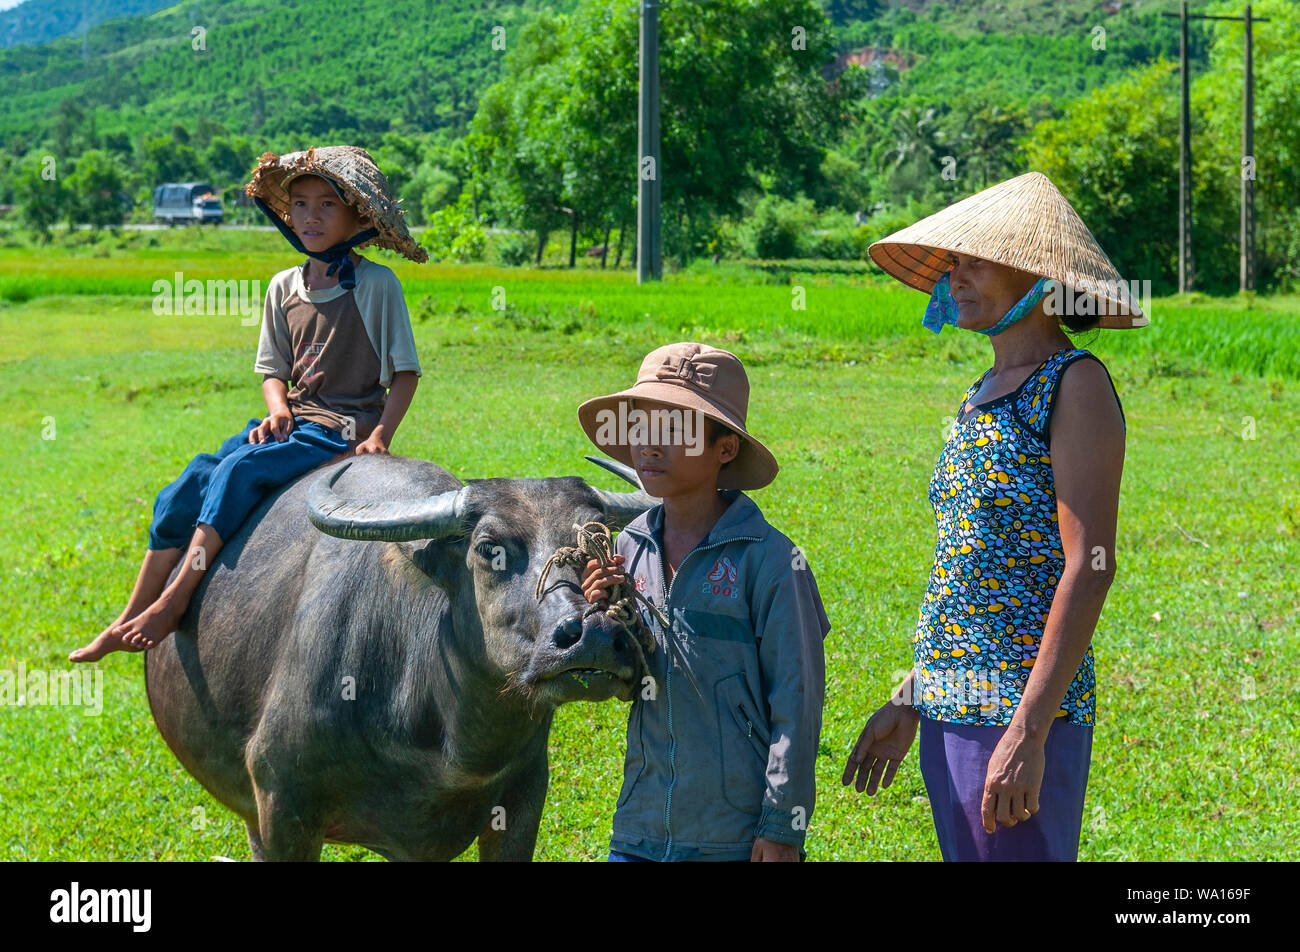 Das ländliche Leben im Zentrum von Vietnam auf dem Weg nach Hue Hoi An mit eine Frau, zwei Kinder und eine inländische Wasserbüffel (Bubalus bubalis") in einem Reisfeld. Stockfoto